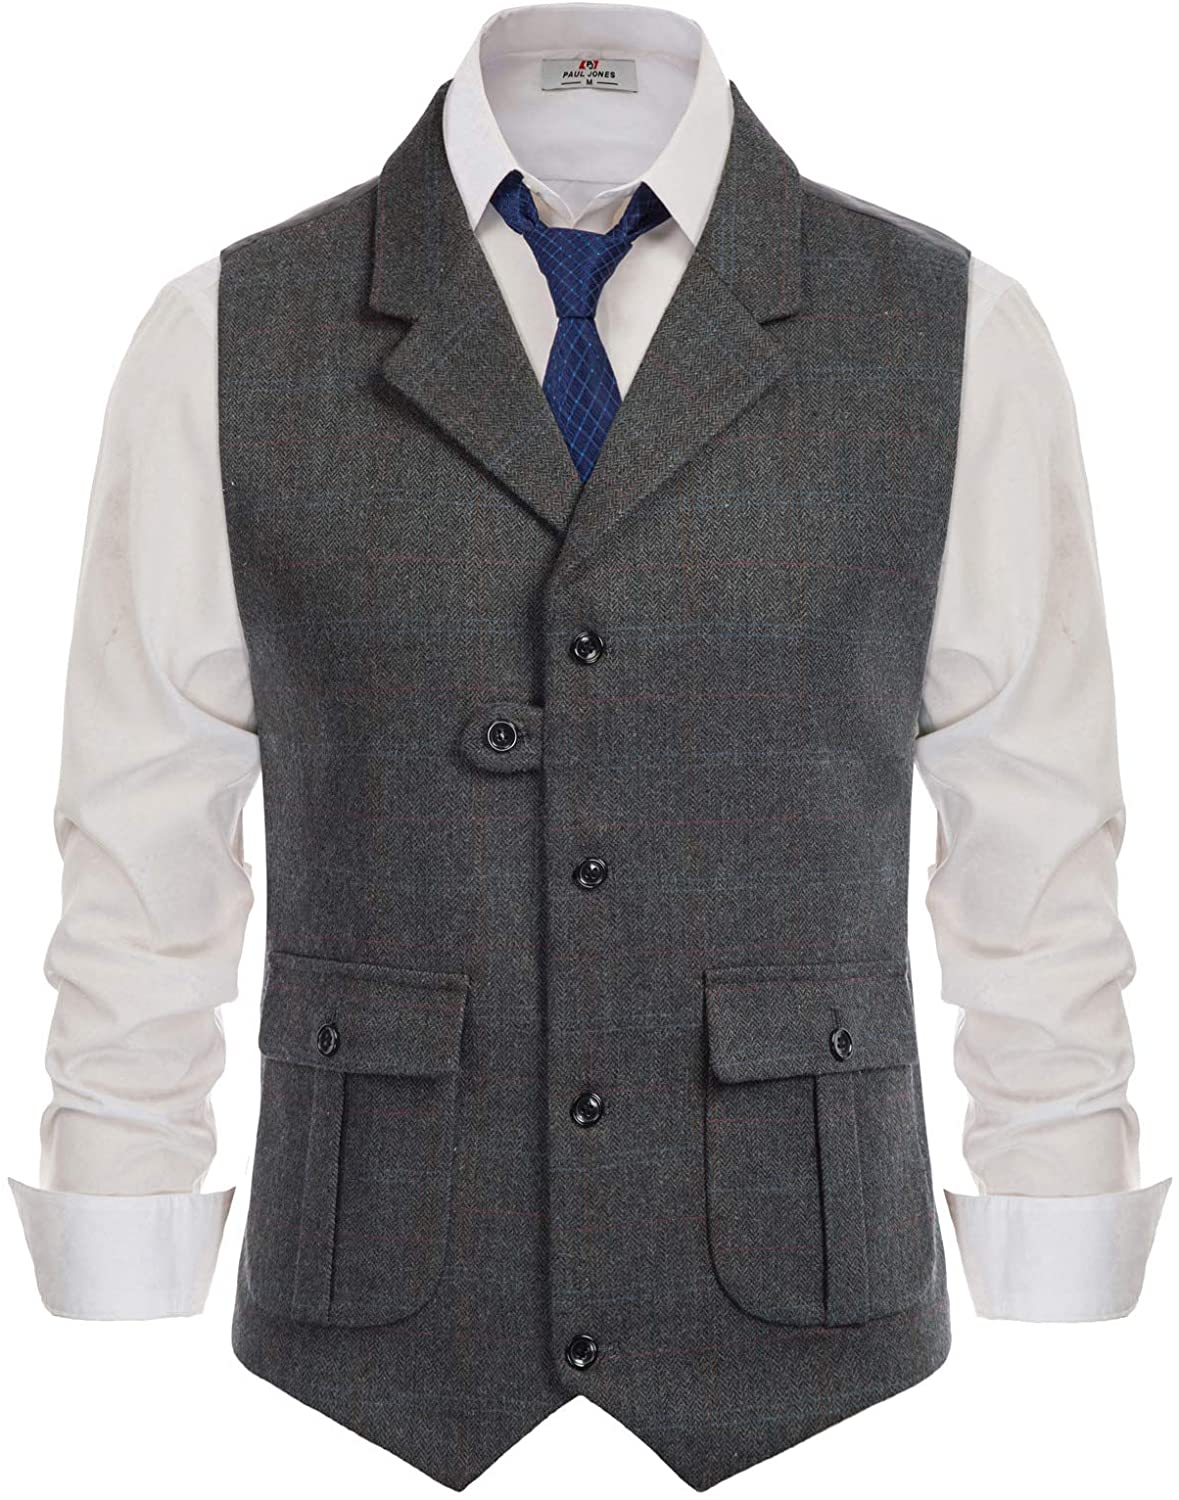 PJ PAUL JONES Men's British Tweed Suit Blazer Premium Wool Blend  Herringbone Wedding Coffee S : : Clothing, Shoes & Accessories